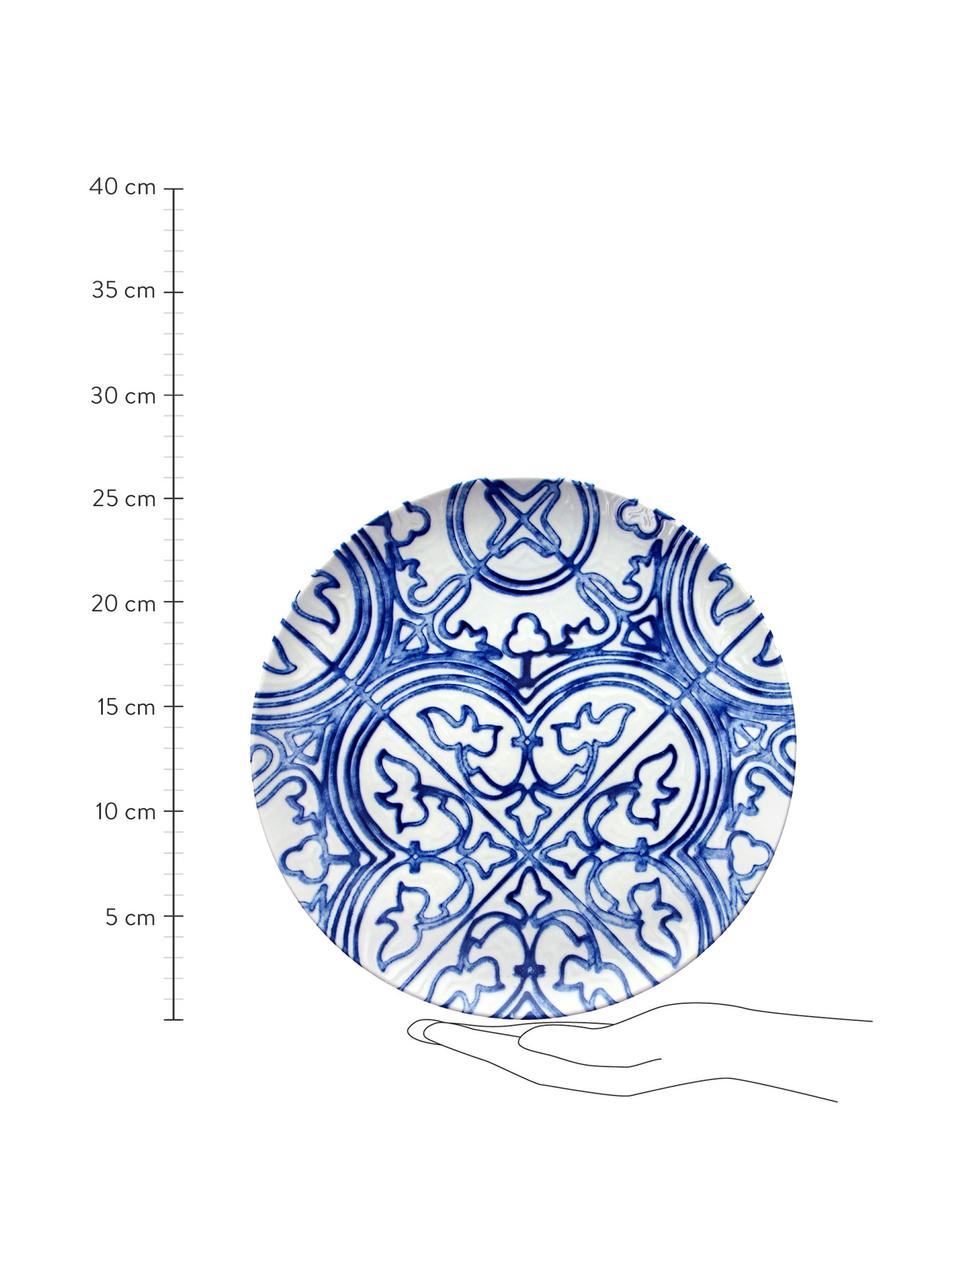 Speiseteller Maiolica aus Porzellan in Weiss/Blau, 2 Stück, Porzellan, Blau, Weiss, gemustert, Ø 26 cm